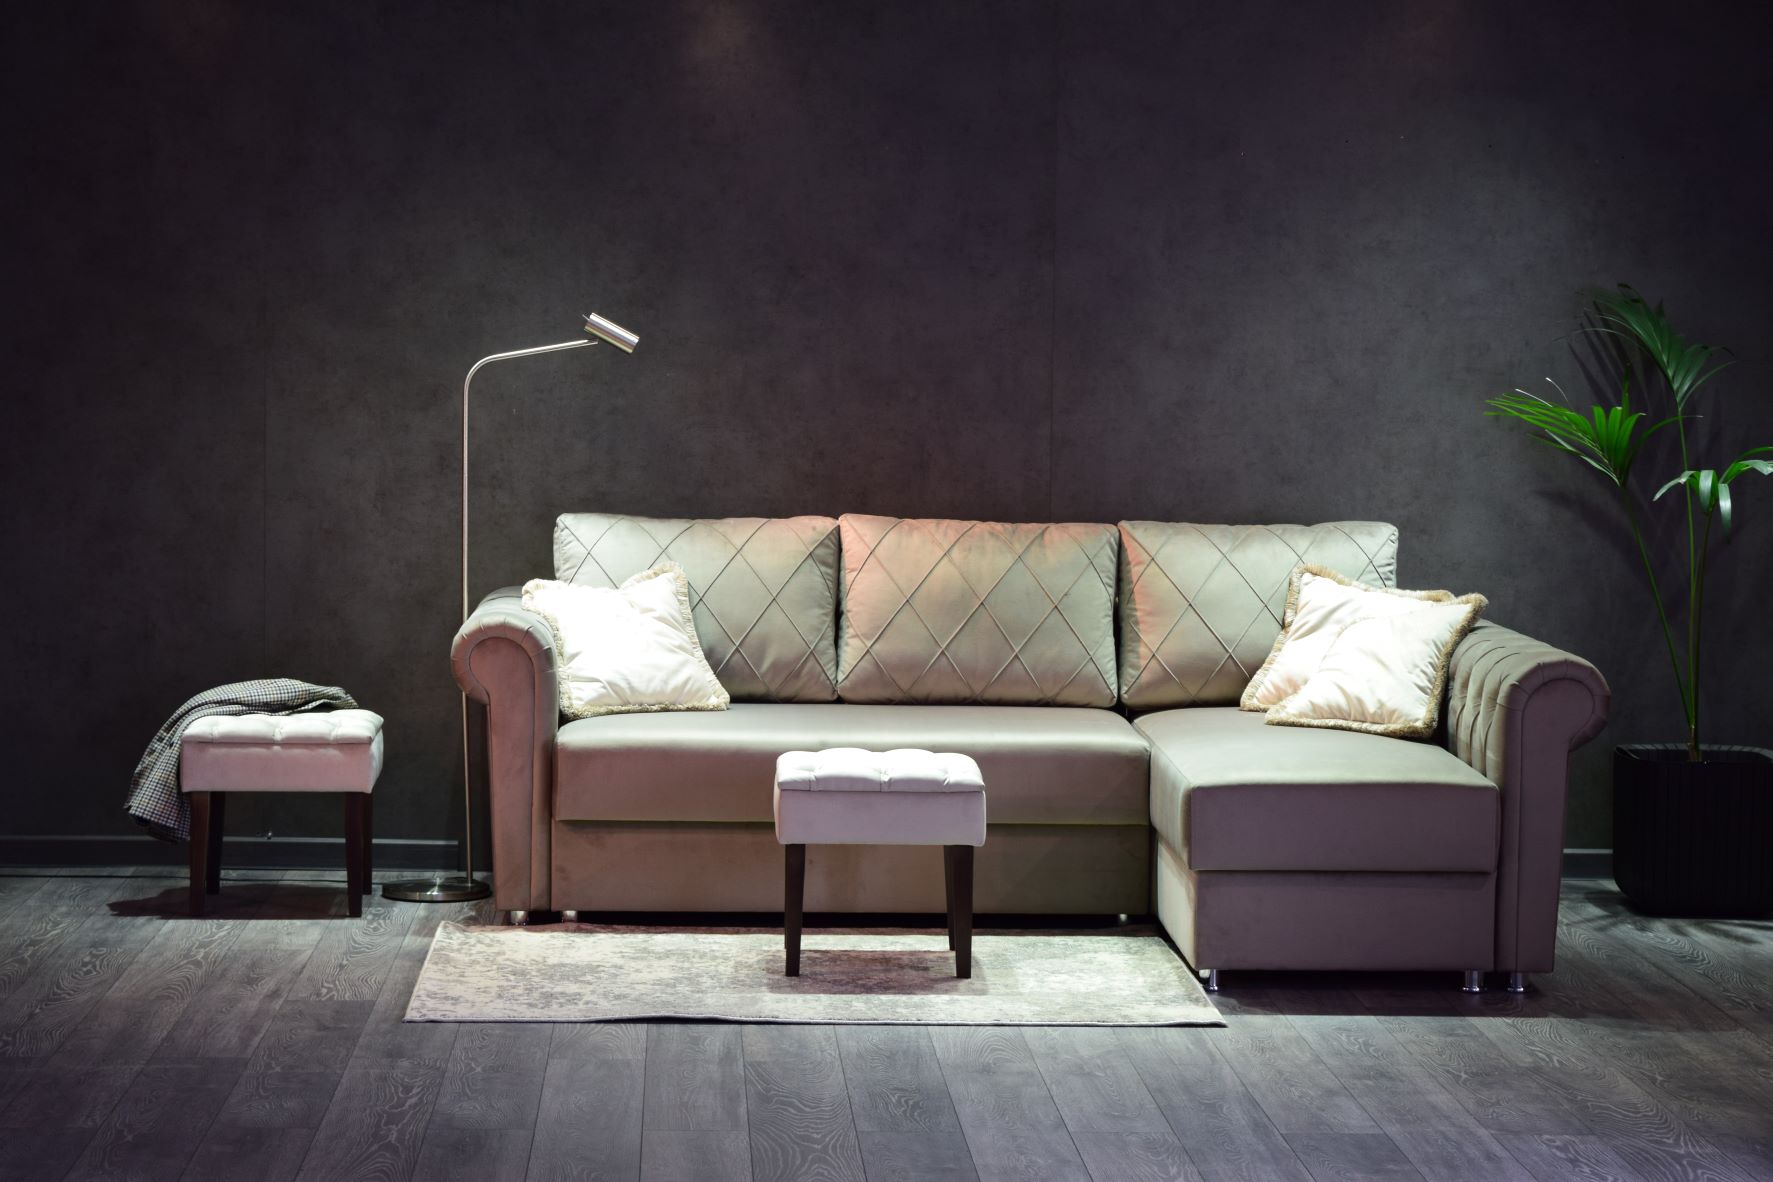 Сочетание комфорта и элегантности- преимущества покупки углового дивана для стильного интерьера